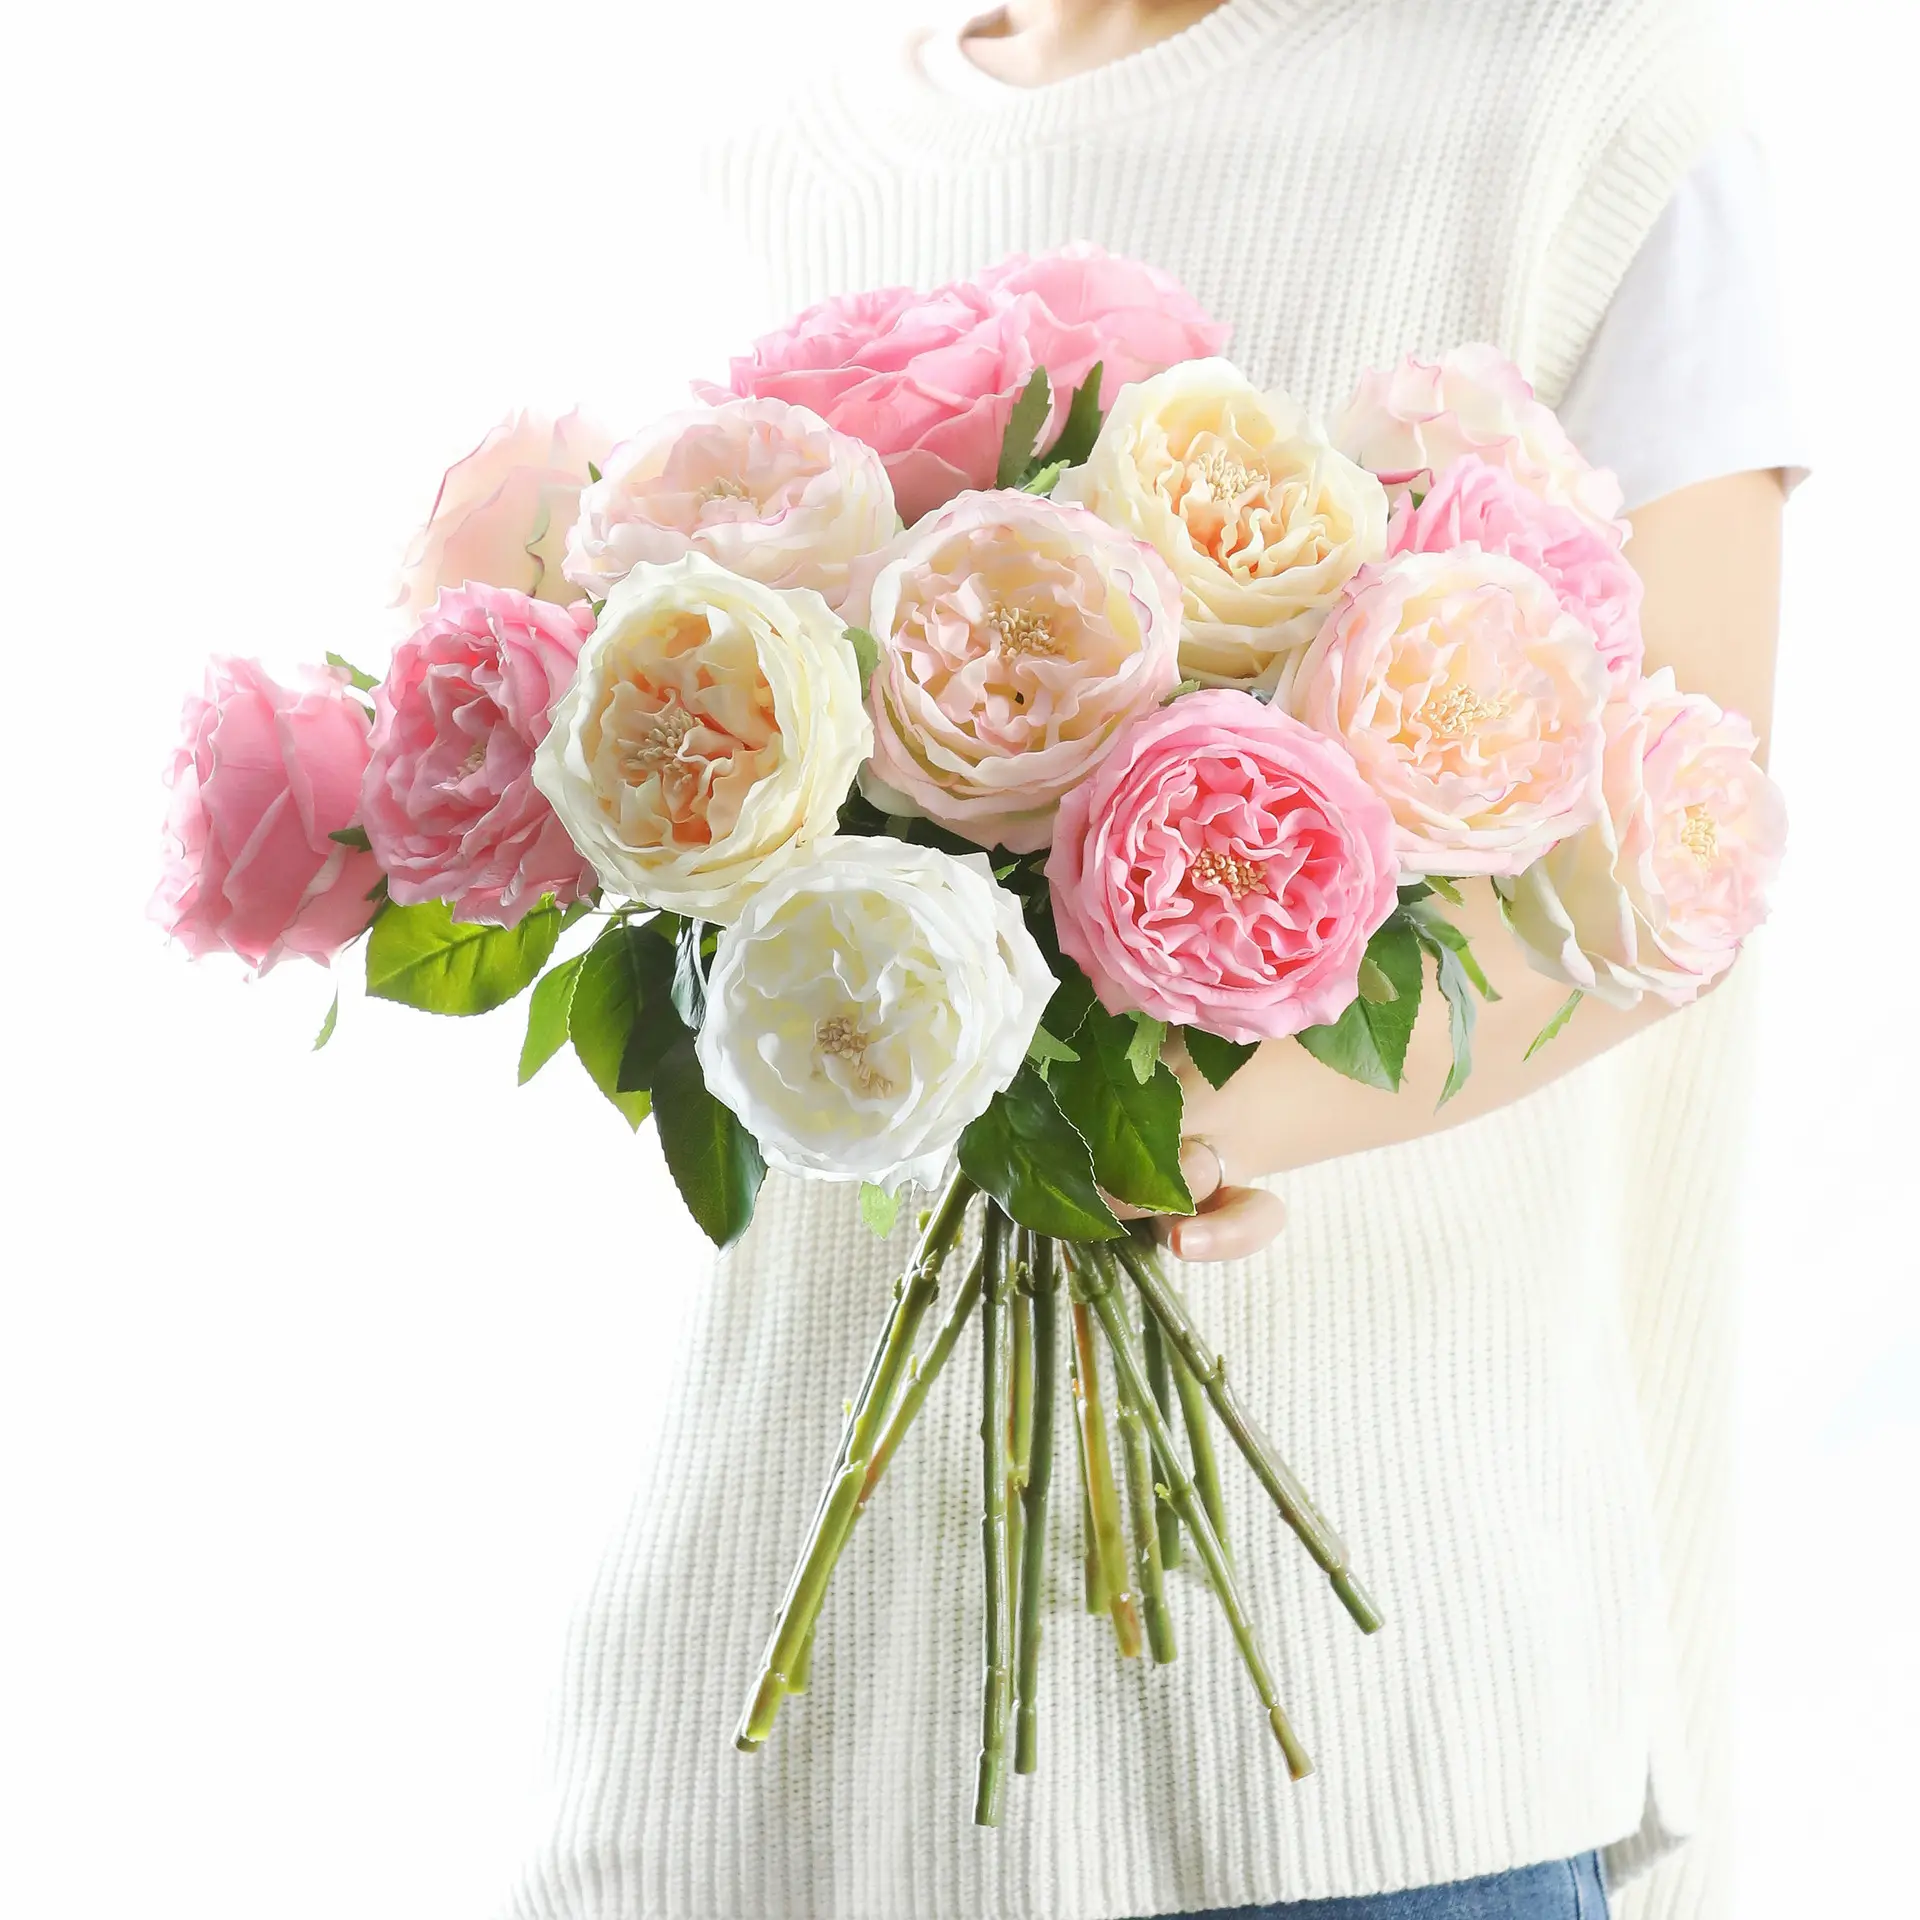 Rosa hidratante de alta sensación de simulación, flores rosas artificiales de Austin para decoración del hogar, decoración del banquete de boda